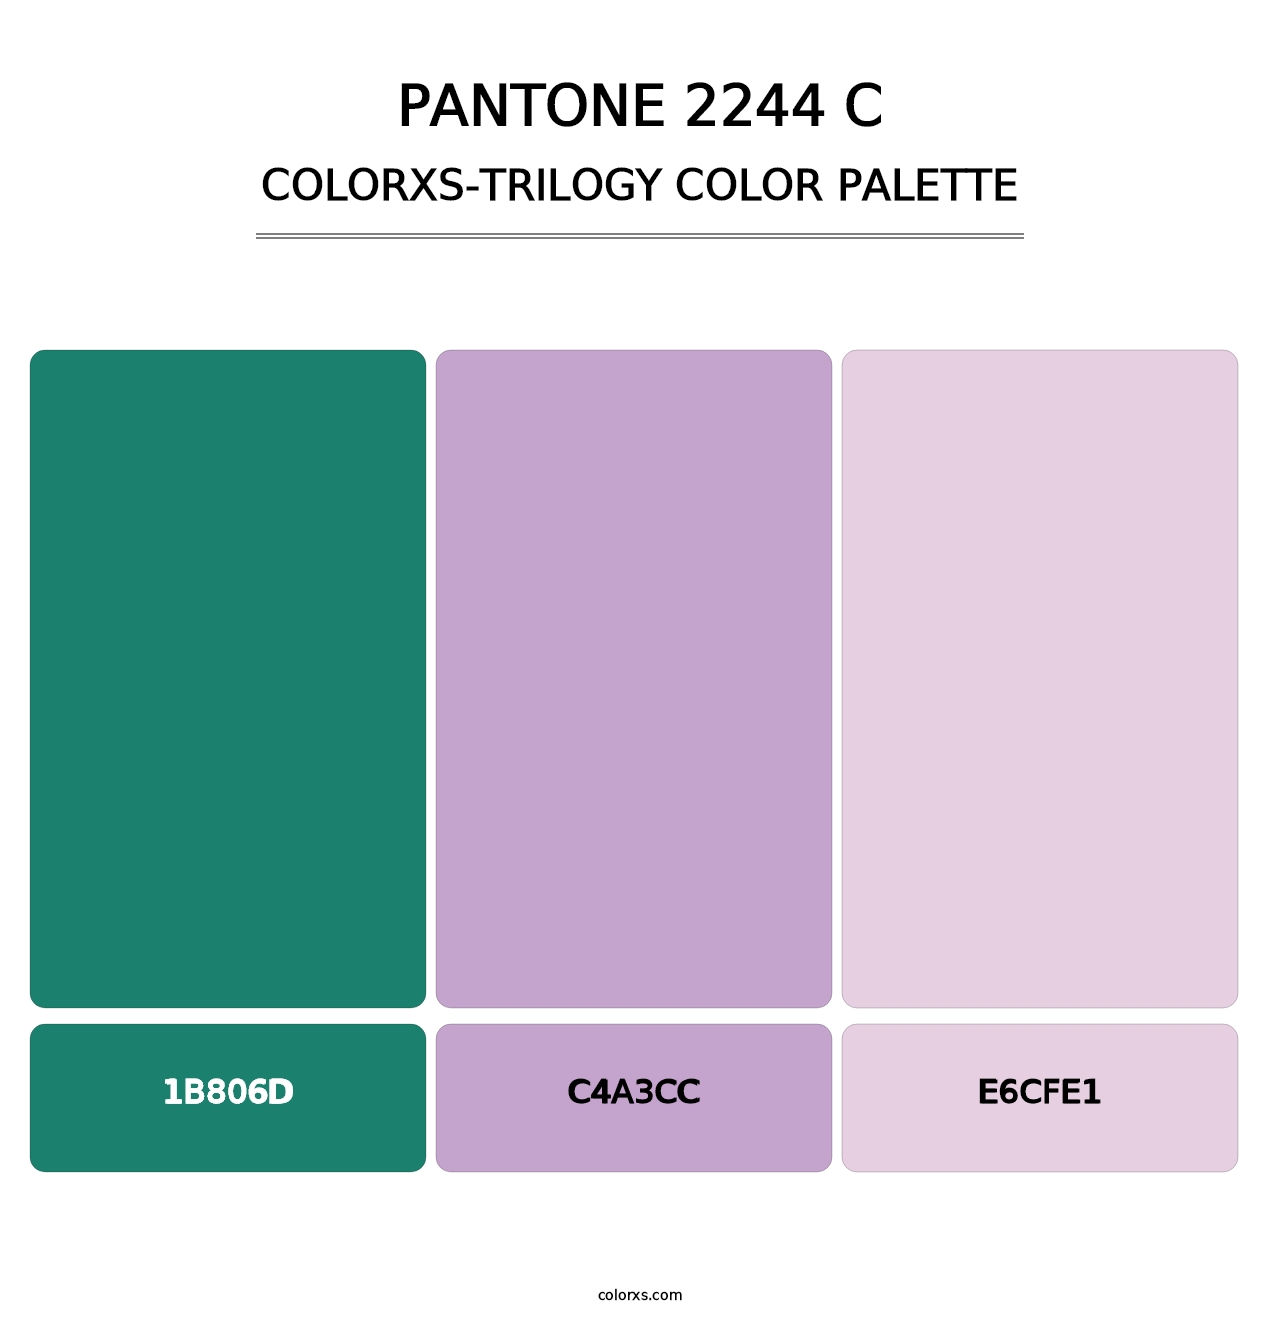 PANTONE 2244 C - Colorxs Trilogy Palette